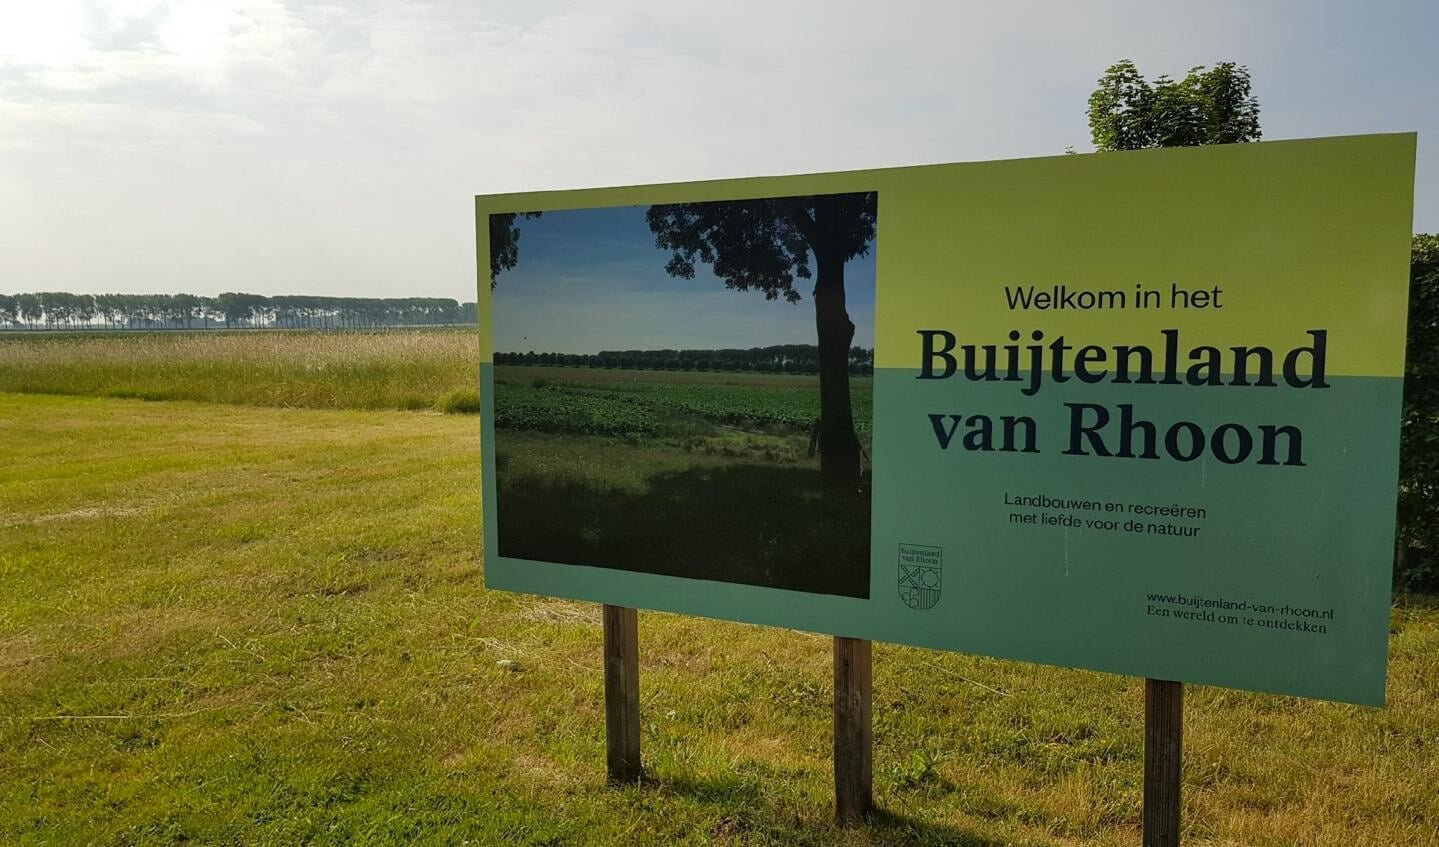 Tien hectare compensatiebos in het Buijtenland van Rhoon heeft de provincie beloofd.